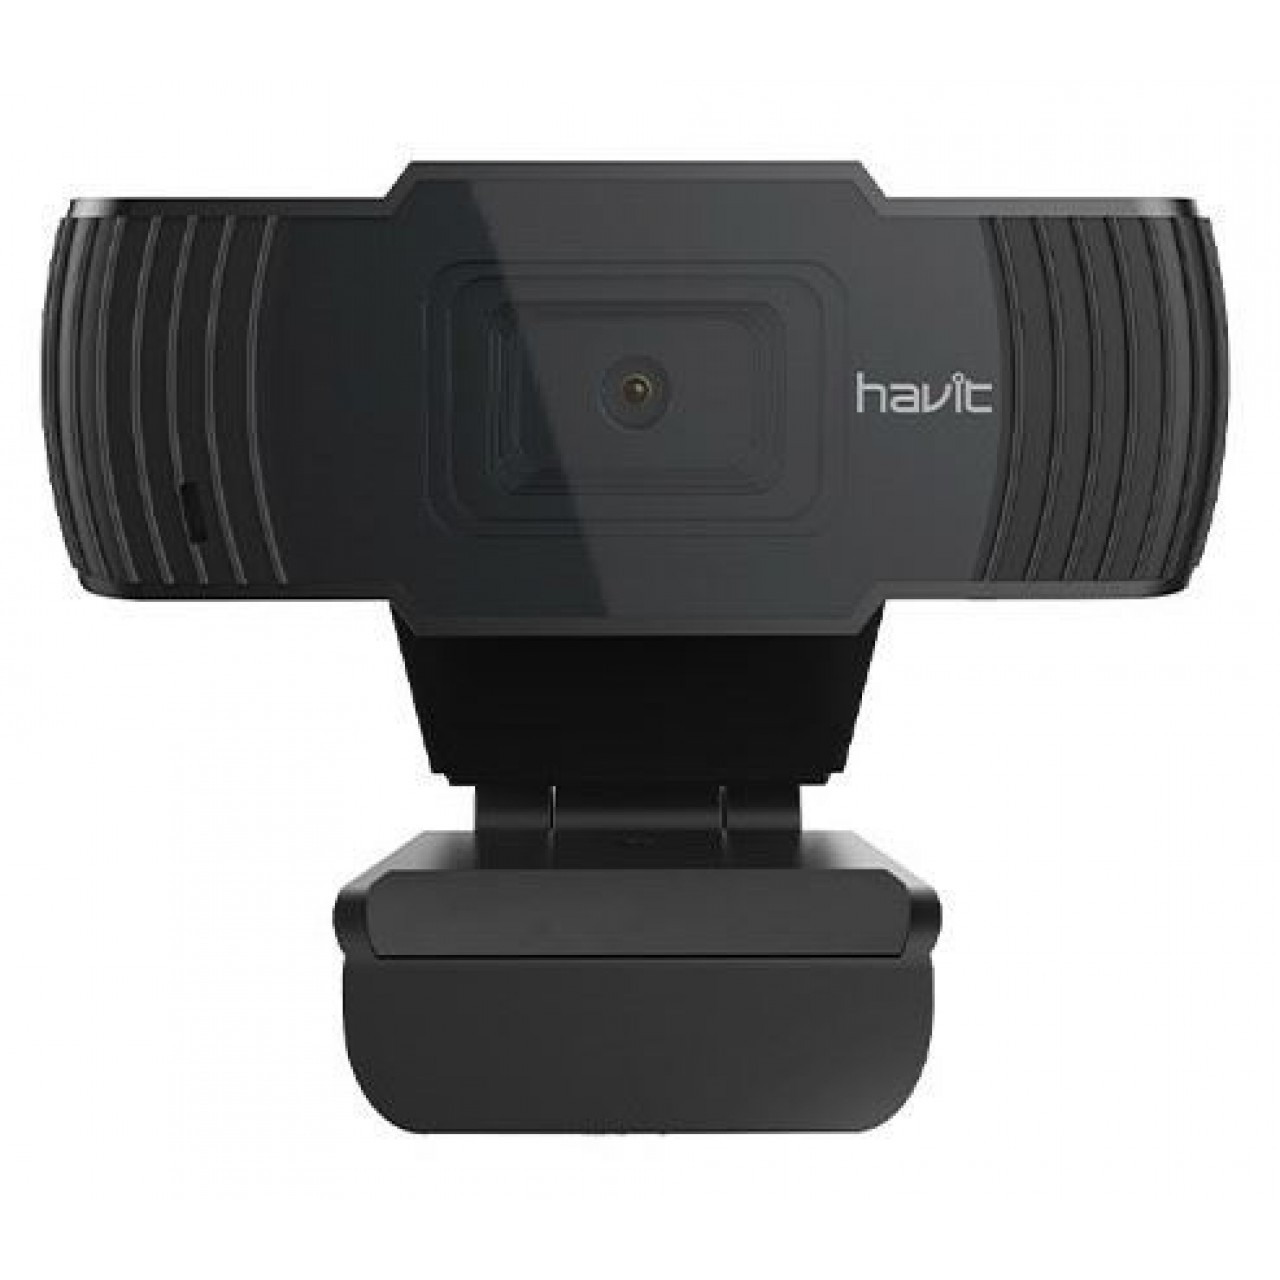 Web κάμερα Η/Υ - Havit HN12G - 5372